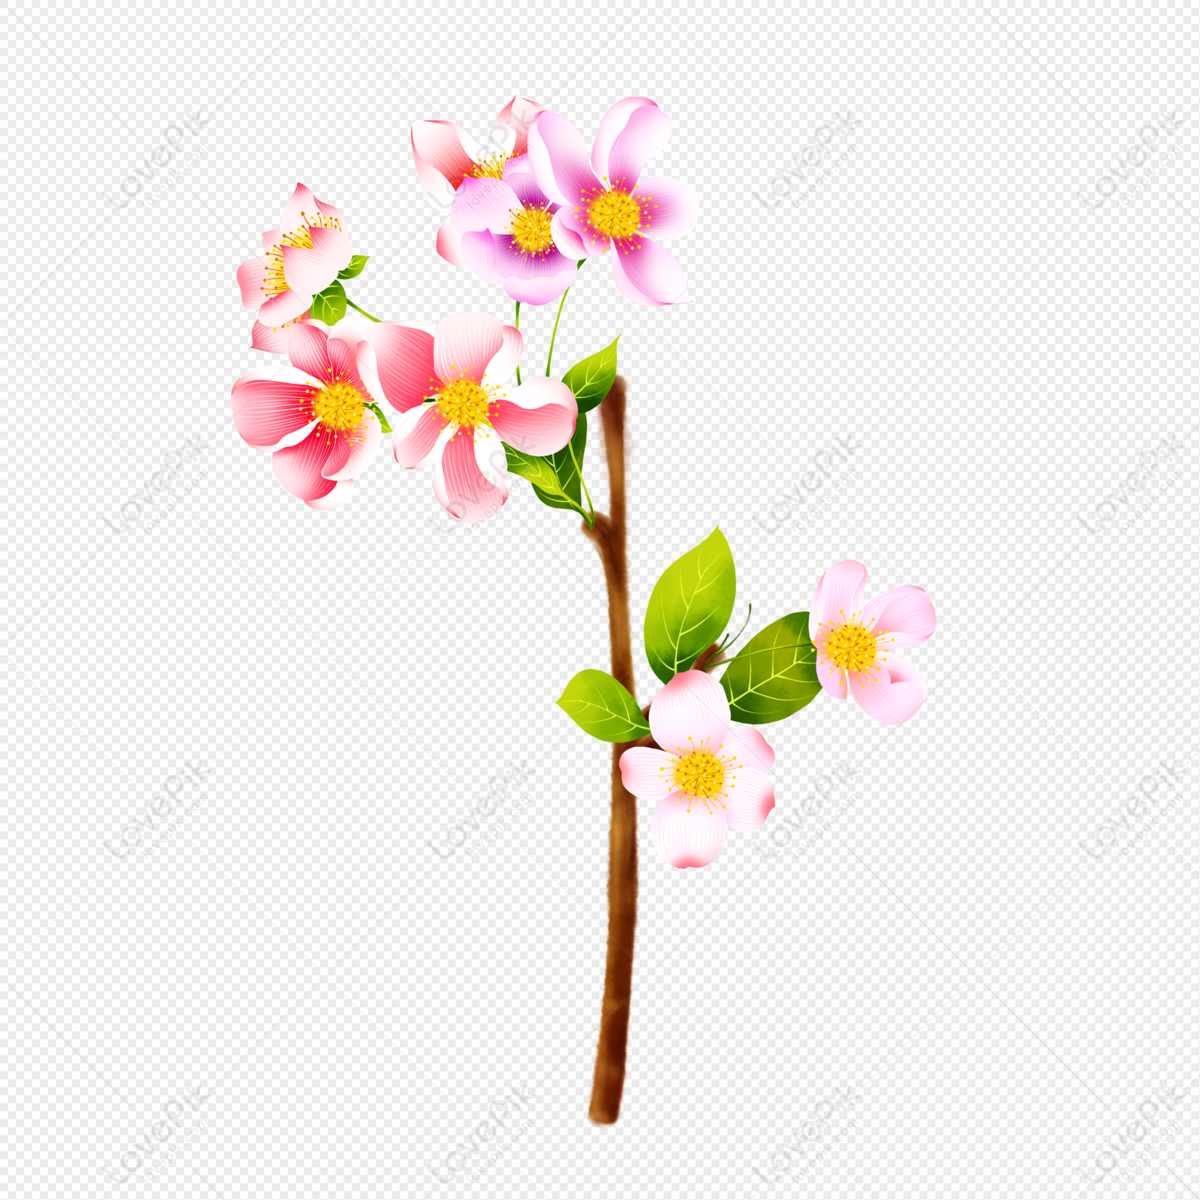 Hình ảnh của Peach Blossom sẽ giúp bạn thấy được sự đẹp và tinh tế của thiên nhiên. Với nét vẽ tinh tế và sáng tạo, các bức ảnh sẽ đem đến cho bạn cảm giác bình yên và thư thái. Hãy xem và cảm nhận nét đẹp hoàn hảo của Peach Blossom.